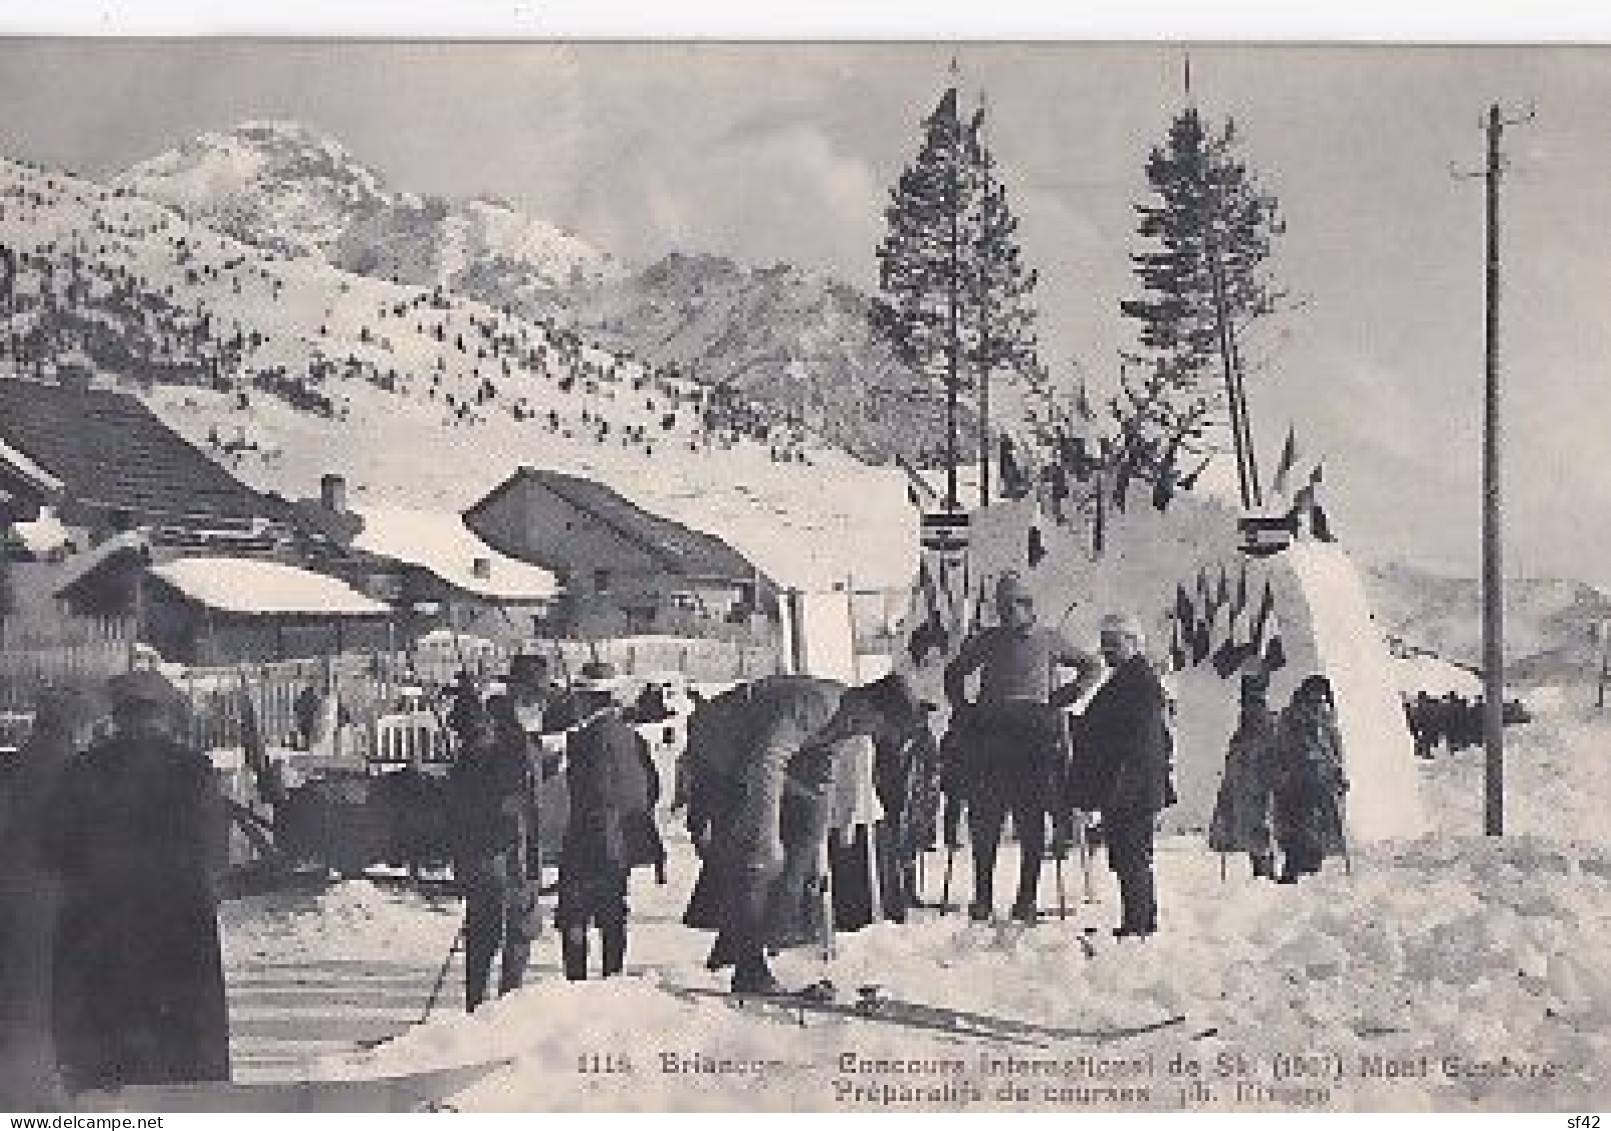 BRIANCON              CONCOURS INTERNATIONAL DE SKI  1907.  MONT GENEVRE          PREPARATIFS DE COURSES - Wintersport